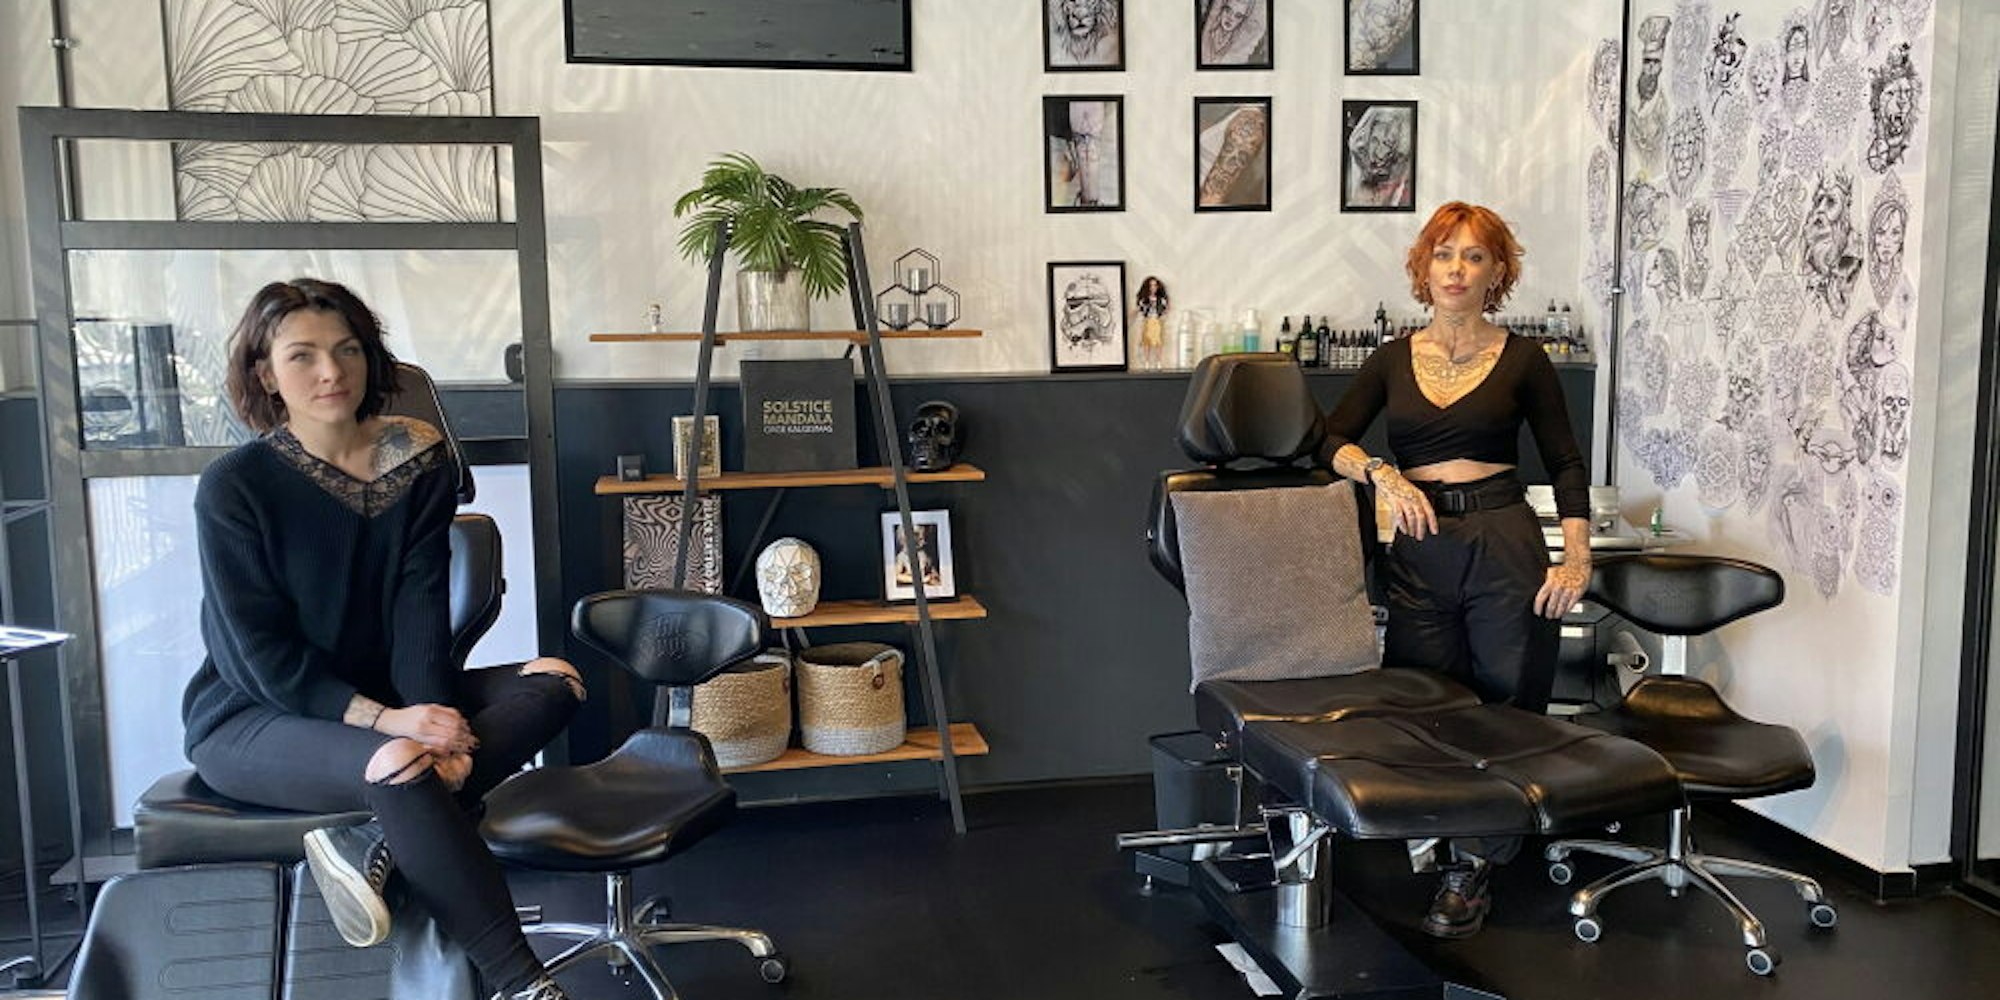 Gabriela Hesterkamp, selbstständige Tätowiererin, (l.) und Fauve Lex, Besitzerin des Tattoo Studios ,,The Black“, hoffen, möglichst bald wieder arbeiten zu können.